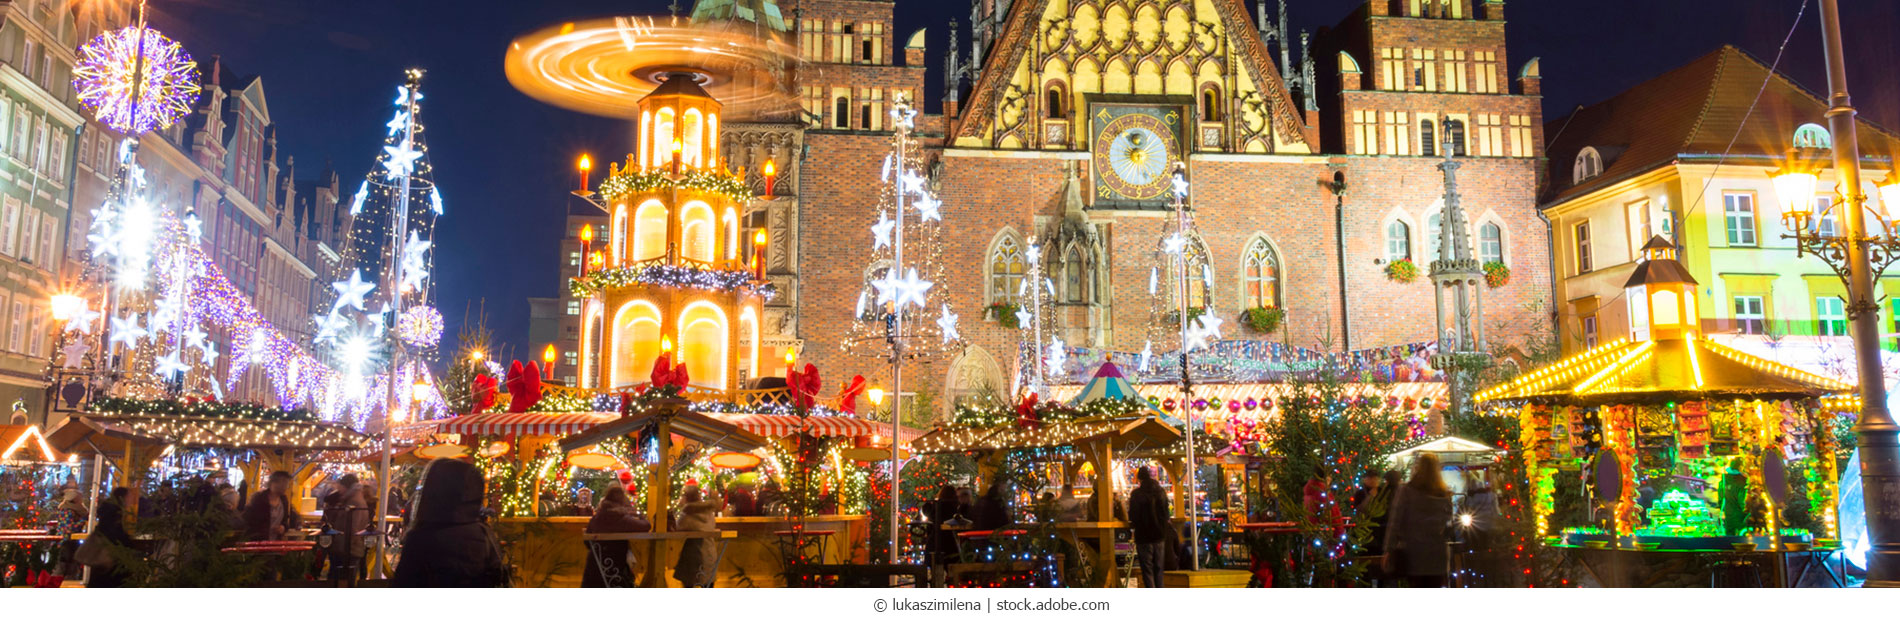 Breslau-Weihnachtsmarkt_Fotolia_97394950_M_webC